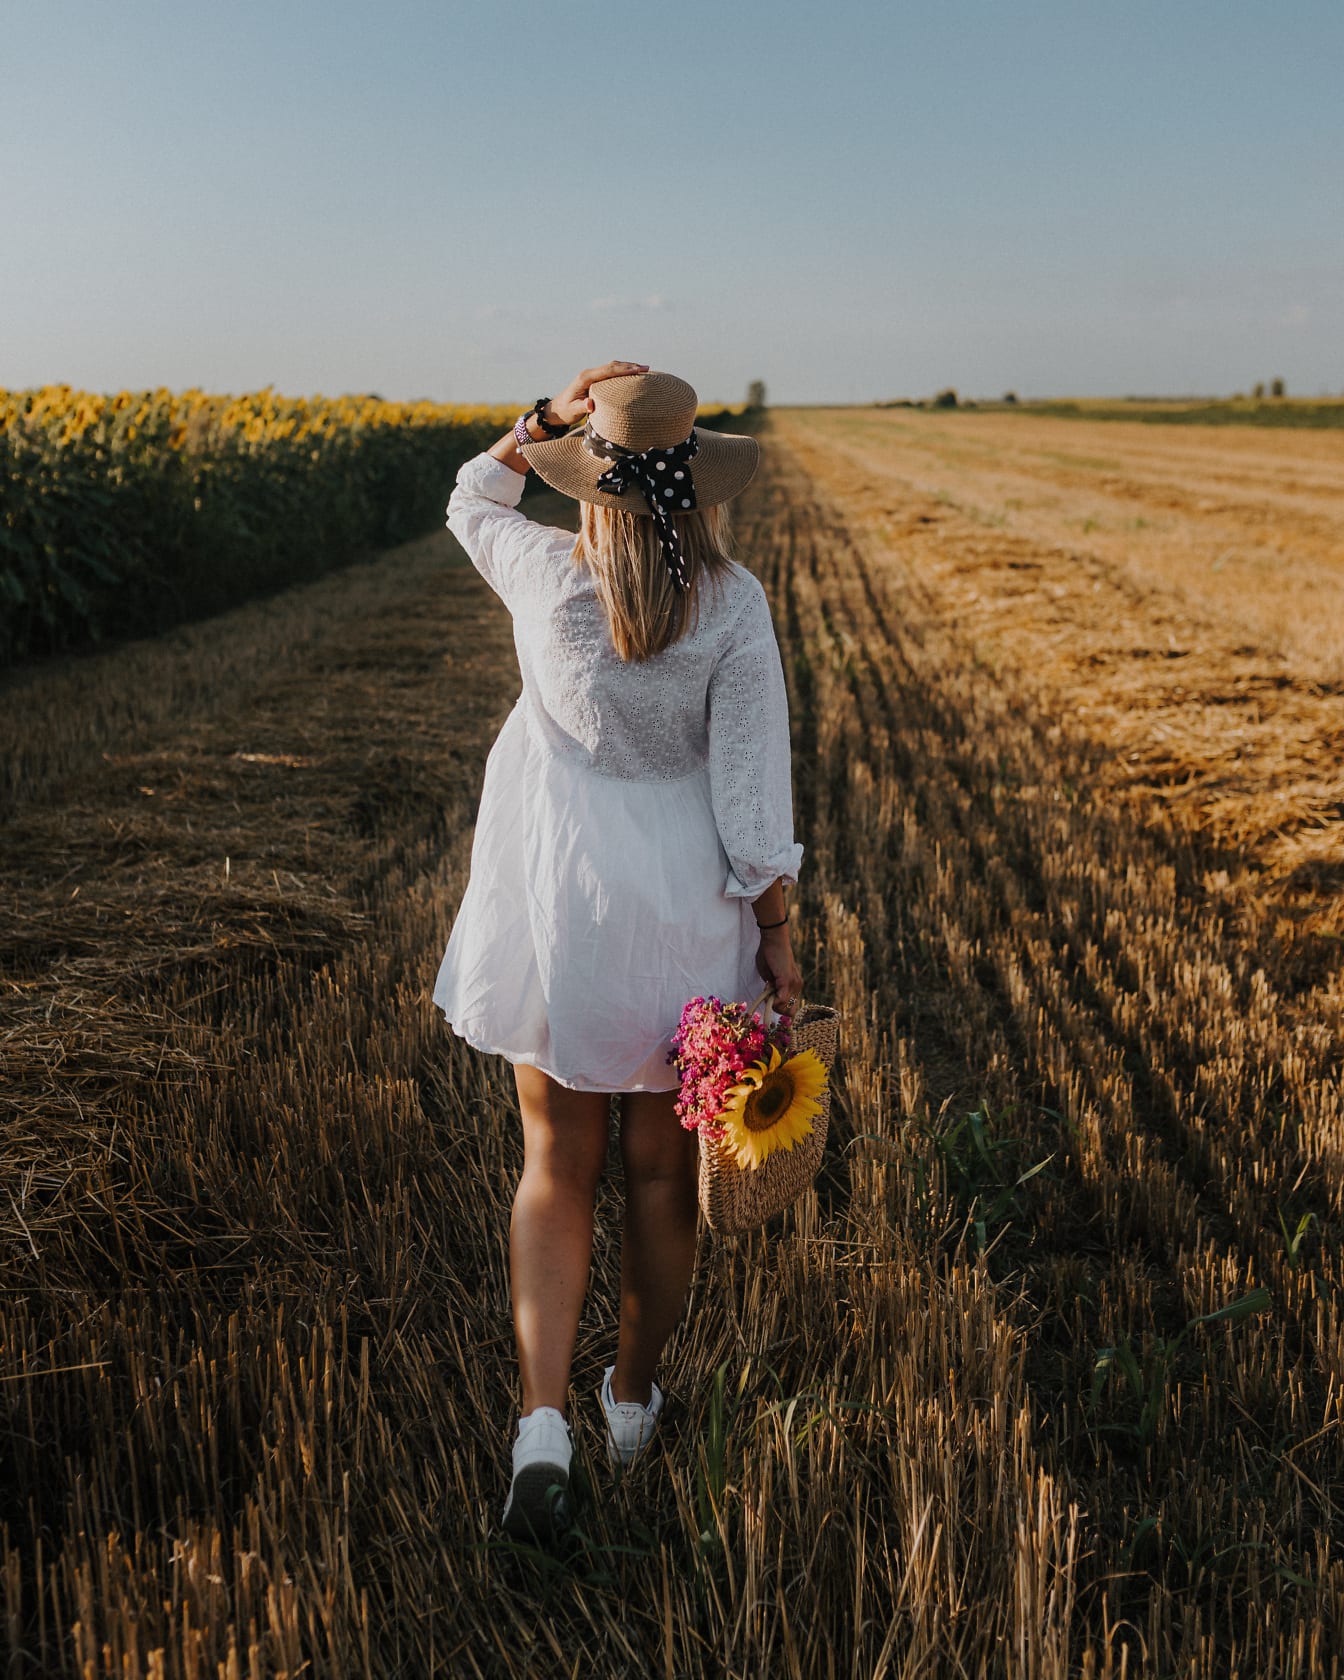 Nuori nainen kävelemässä vehnäpellolla valkoisessa mekossa ja olkihatussa